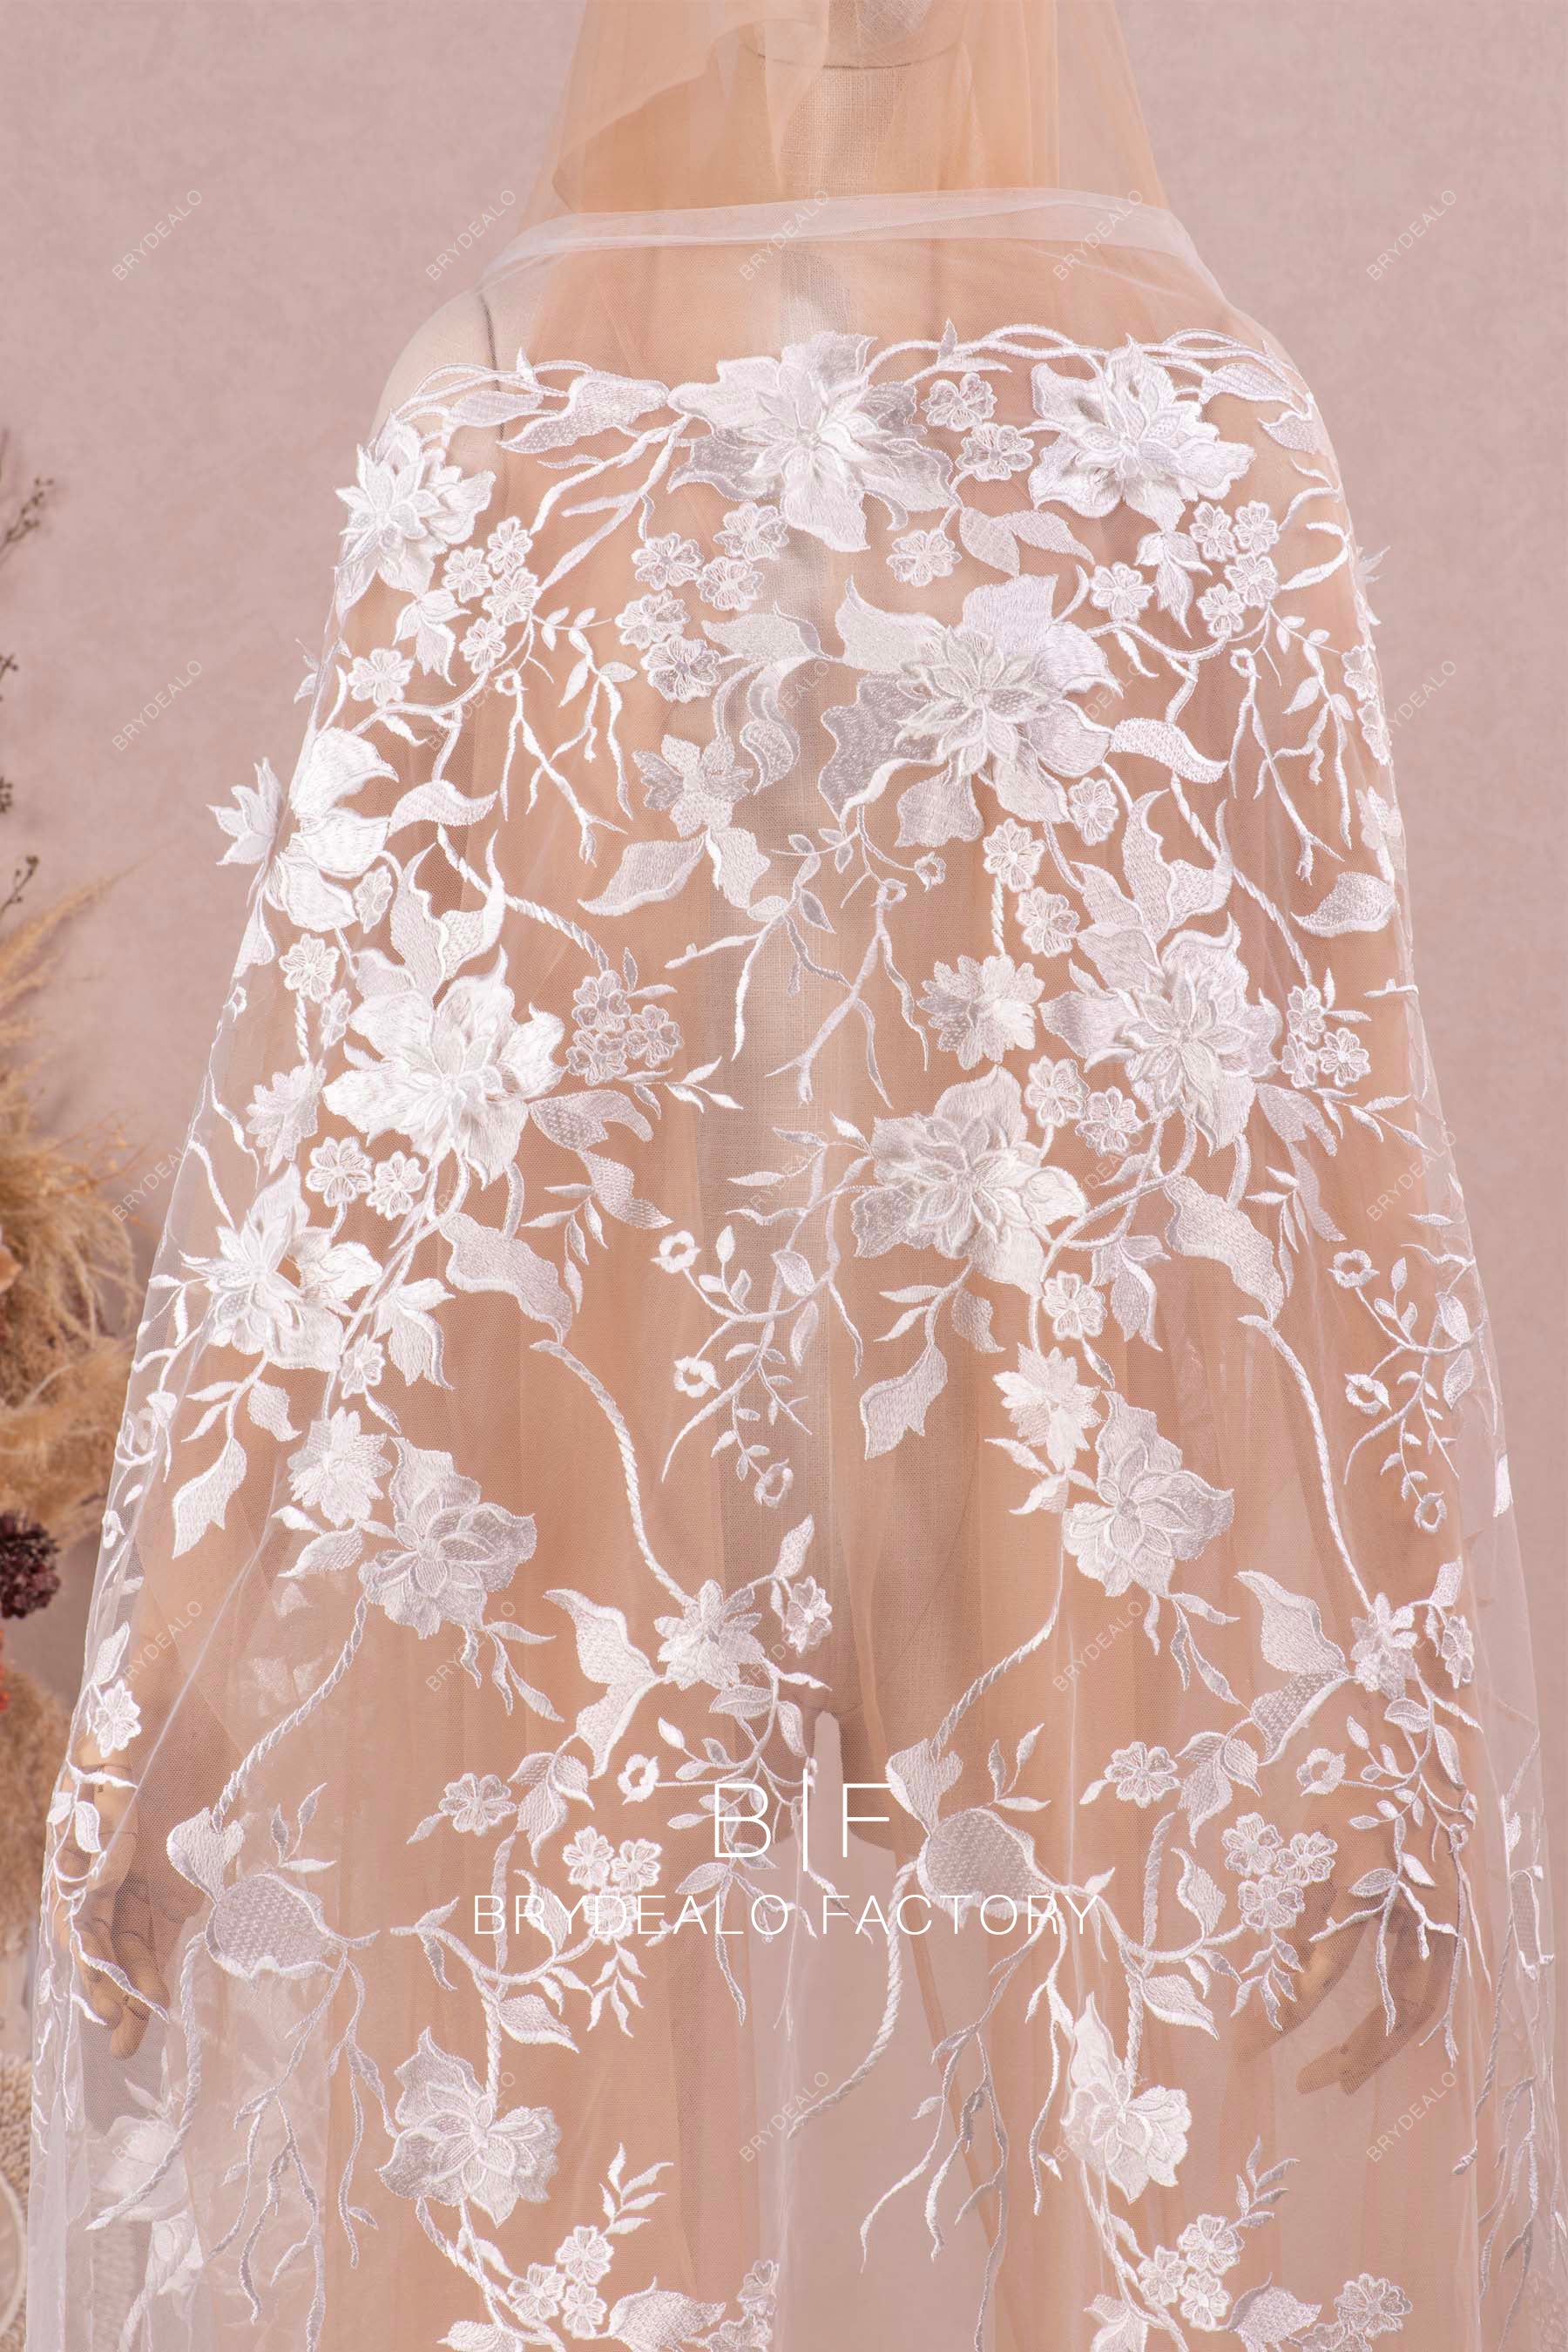 designer bridal lace fabric